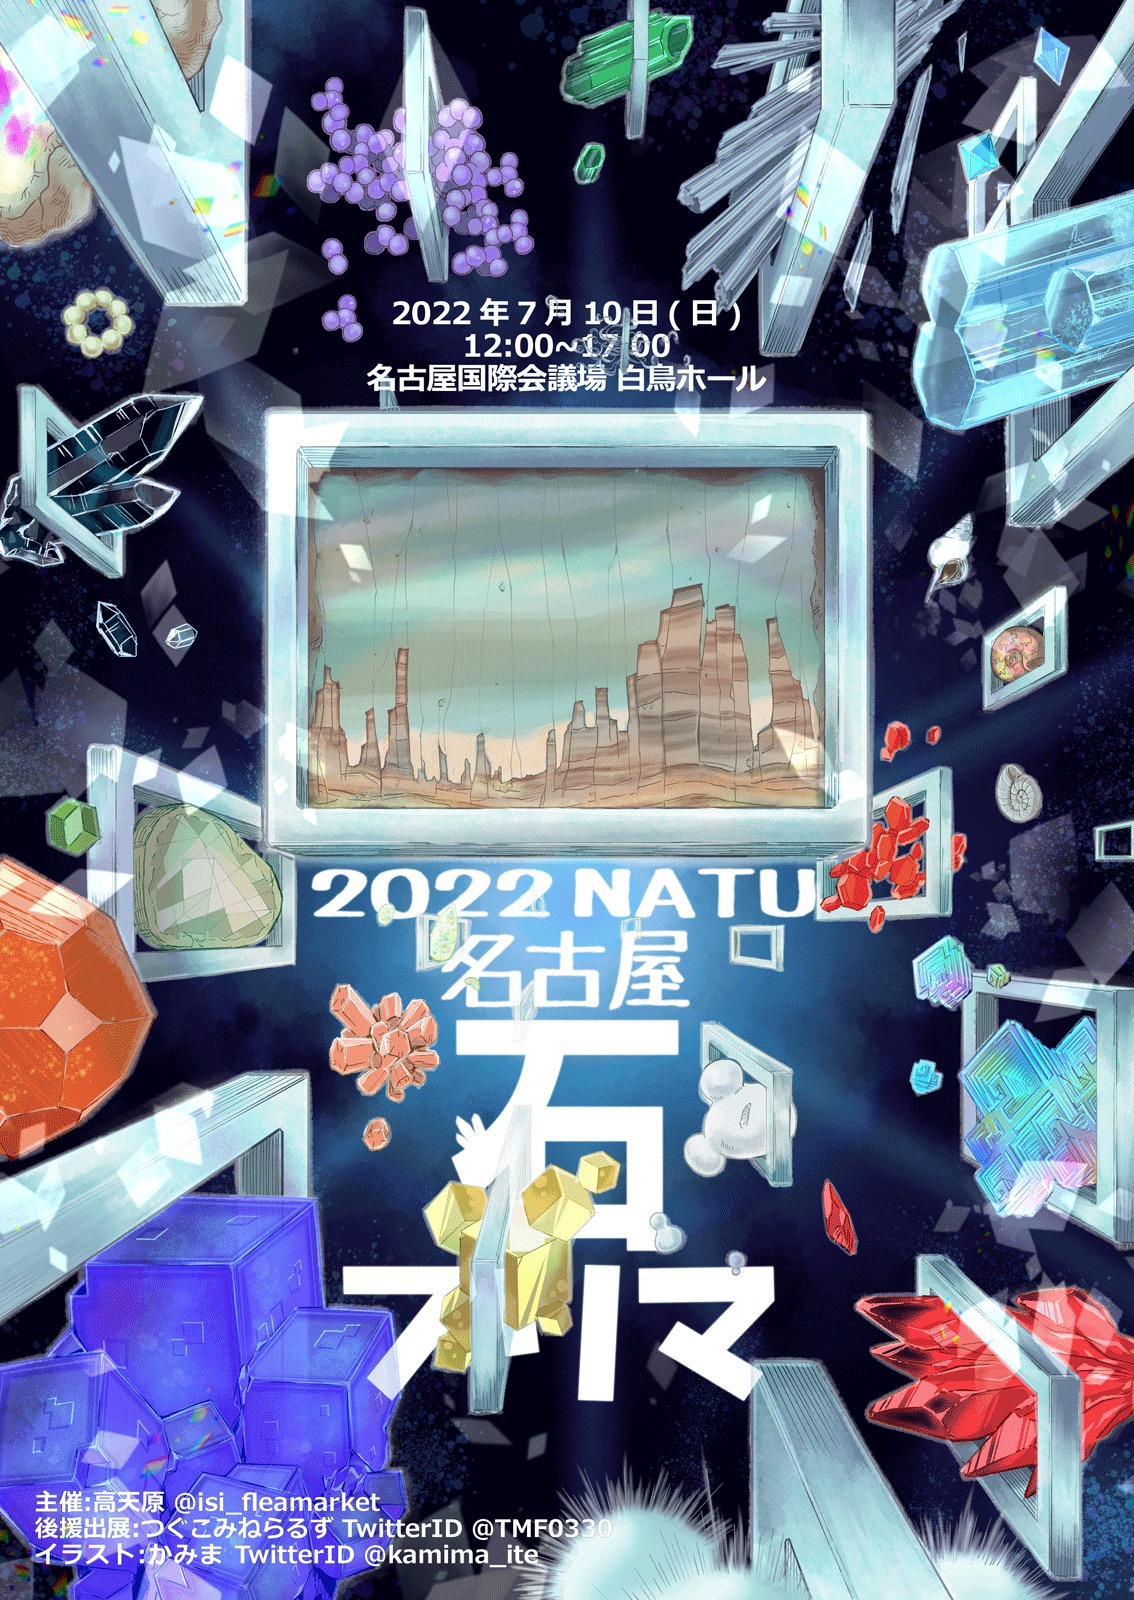 【おしごと】「2022年 名古屋石フリマ夏」キービジュアルを描きました